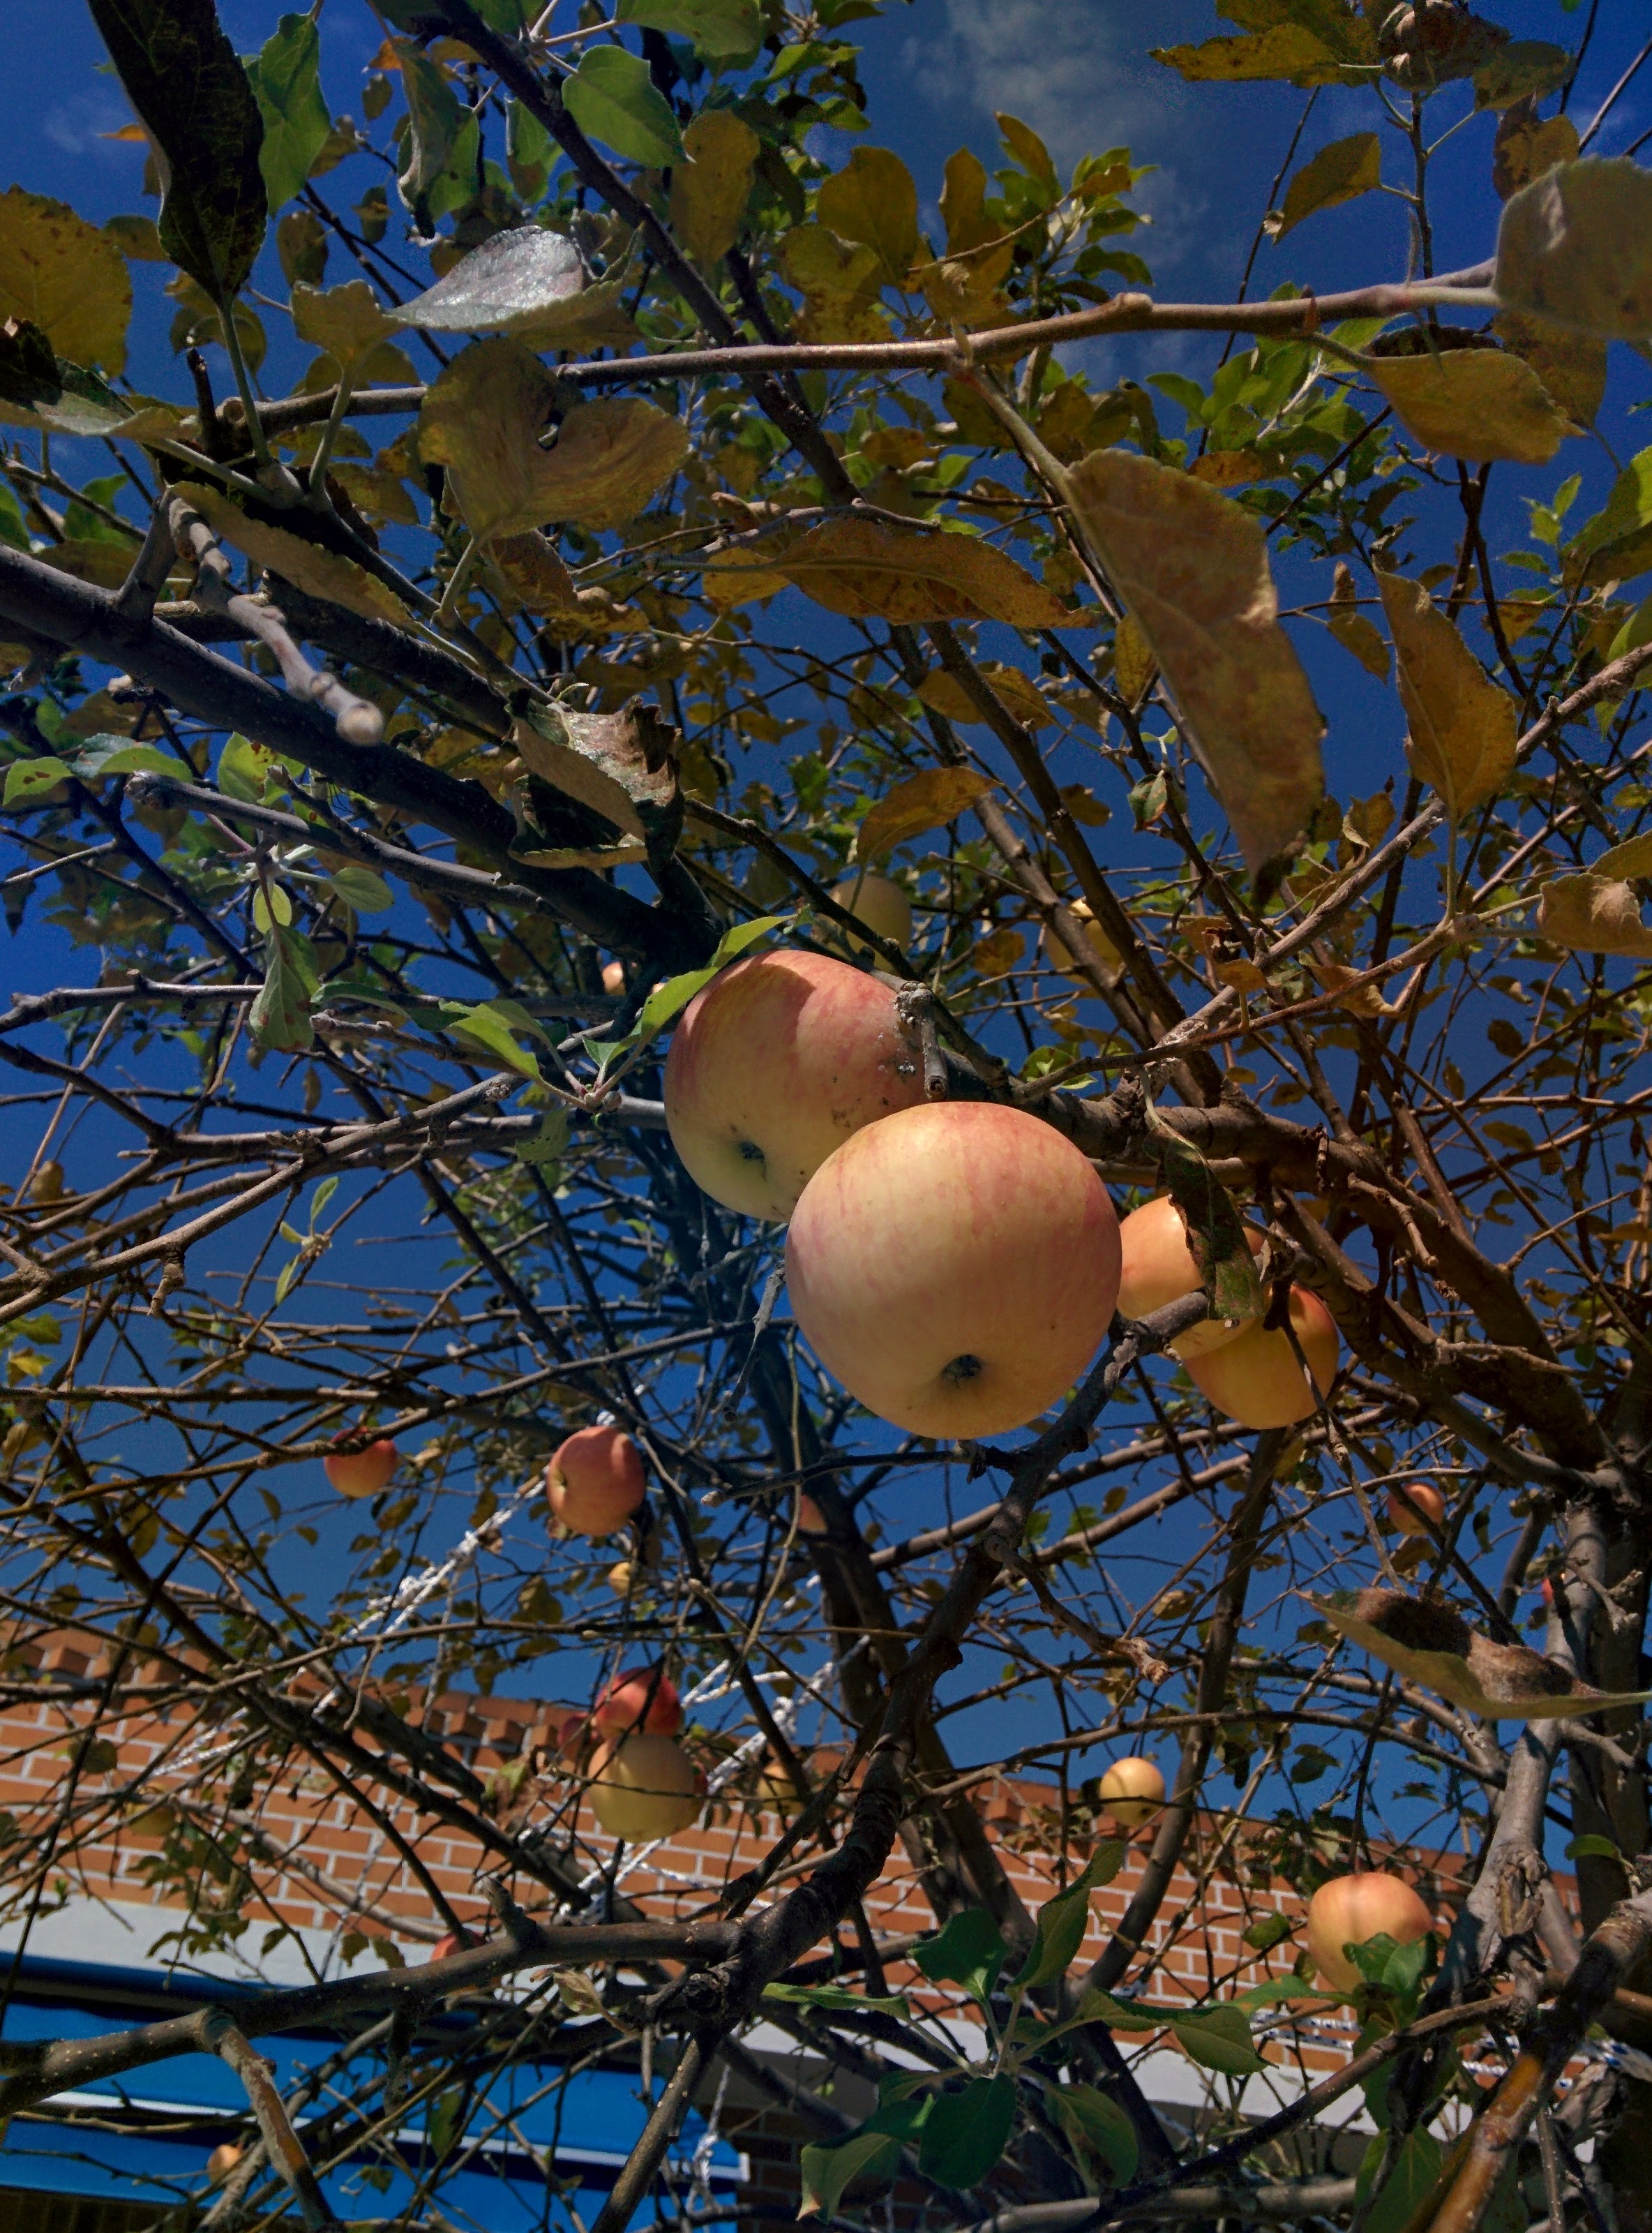 IMG_20150929_114730.jpg 가정집 정원수로 자라는 키큰 사과나무의 사과 열매